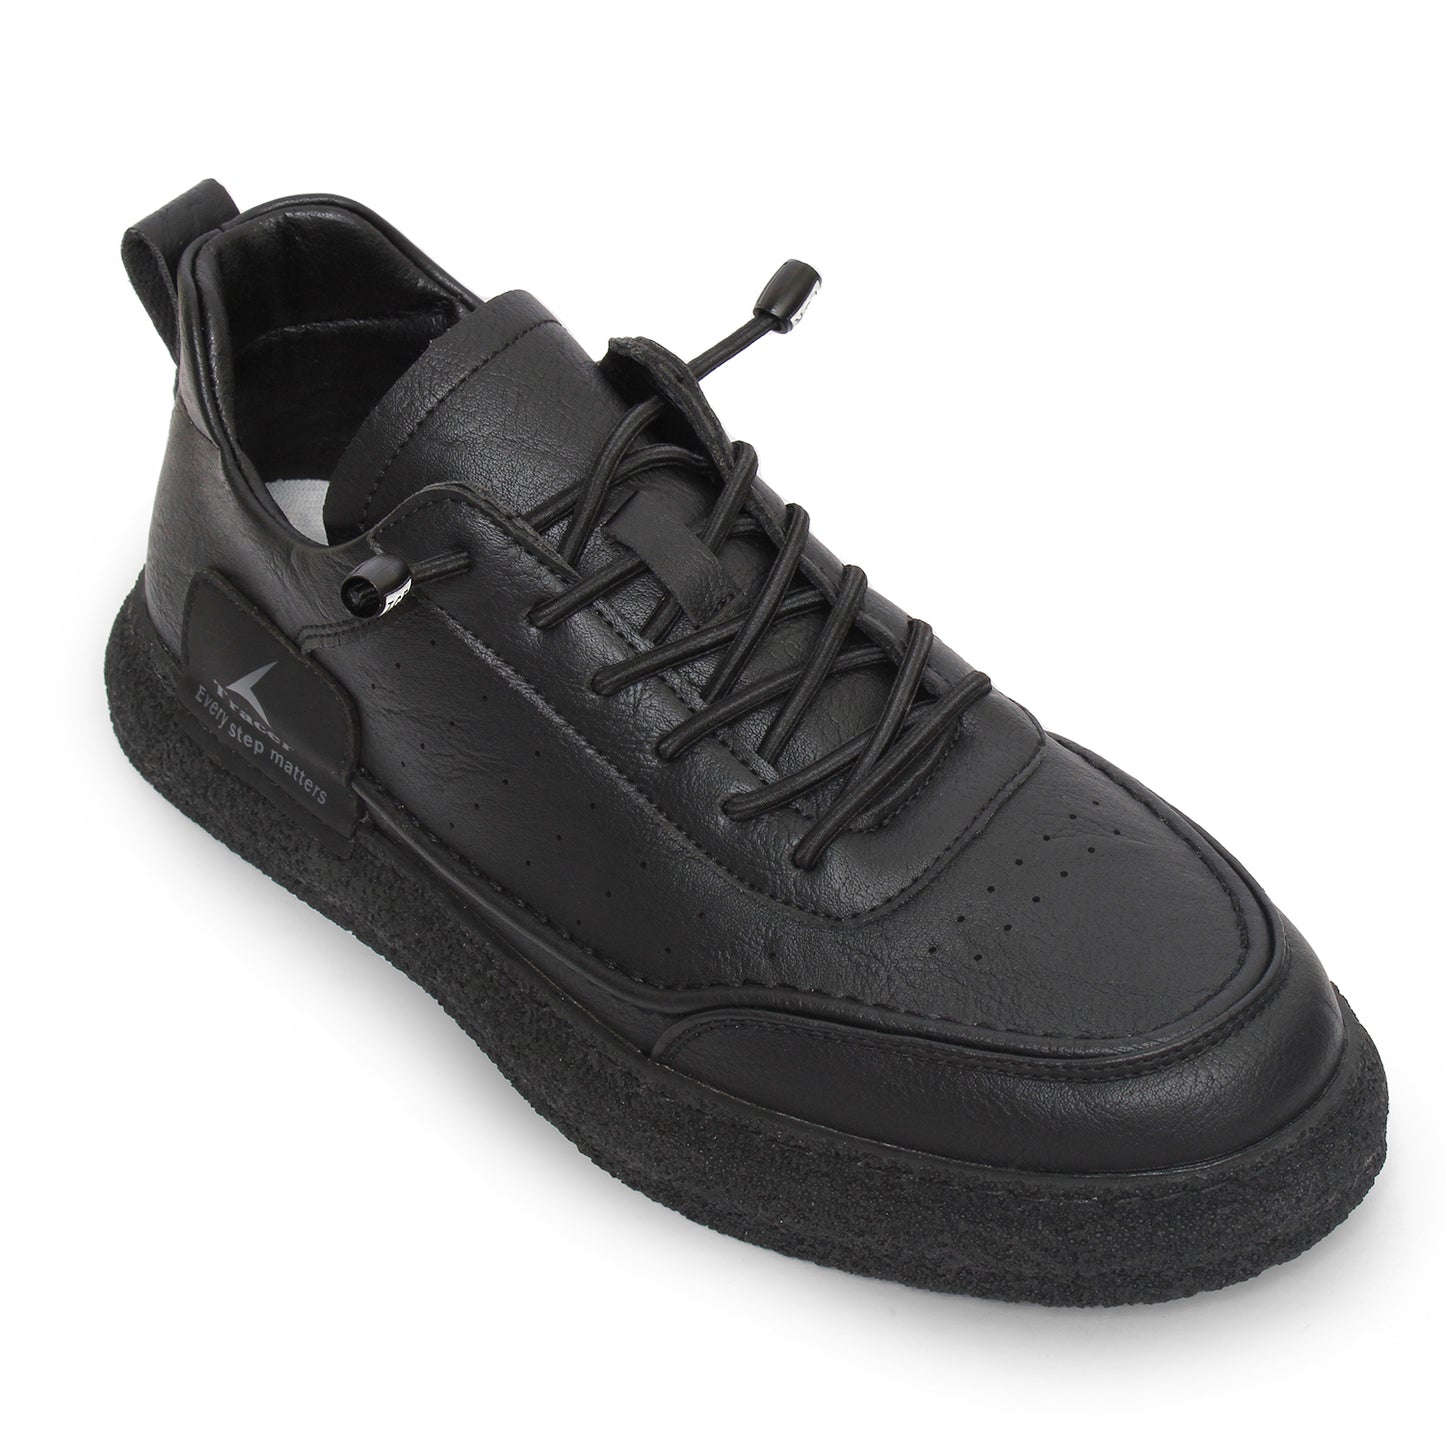 Tracer Scoosh 2715 Sneaker's for Men Black